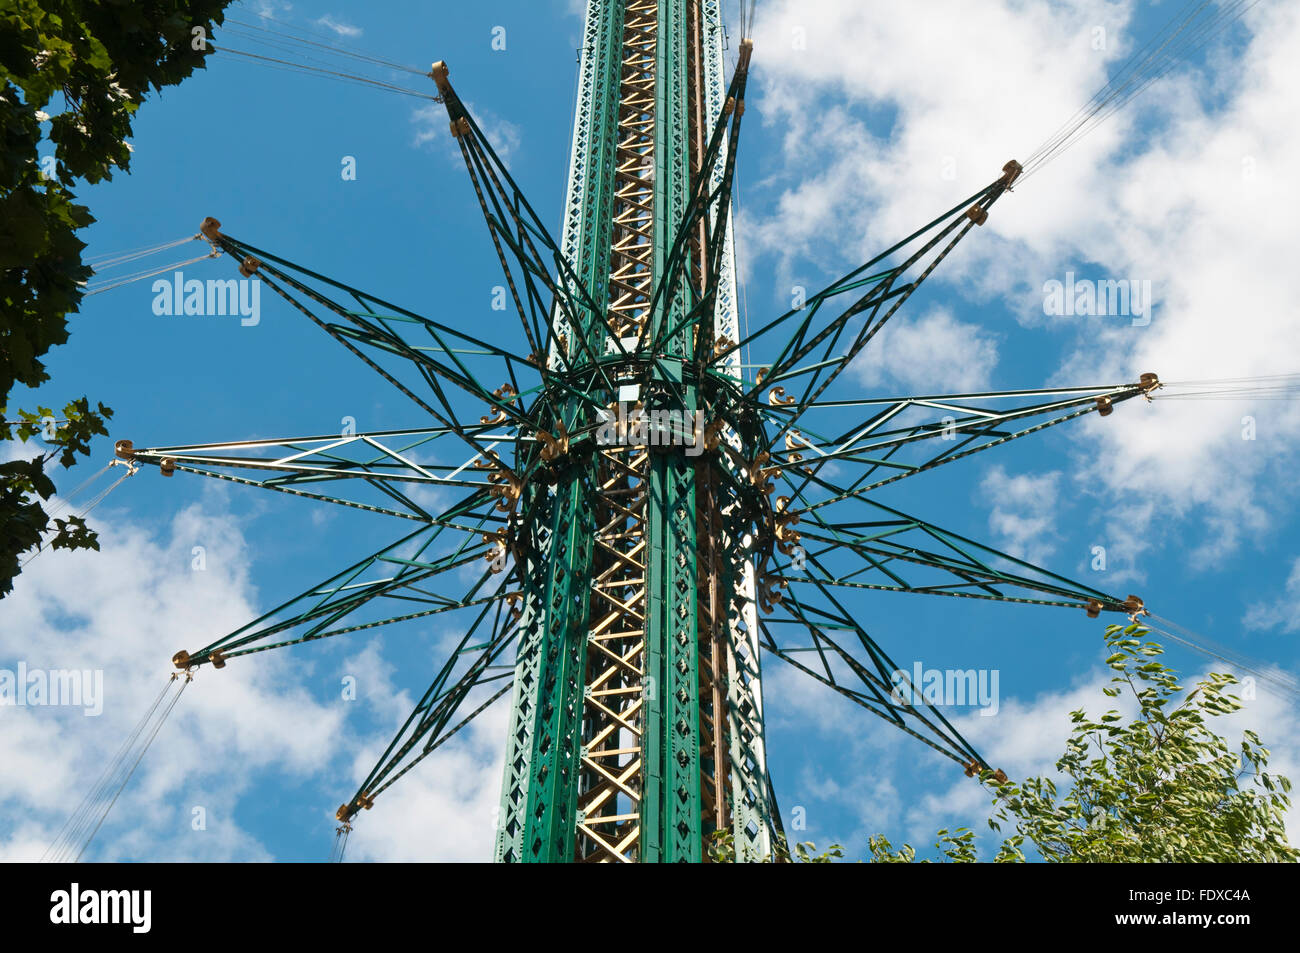 Dettaglio del Prater Turm in Vienna, a 117m i mondi più alto del parco di divertimenti di corsa di oscillazione Foto Stock